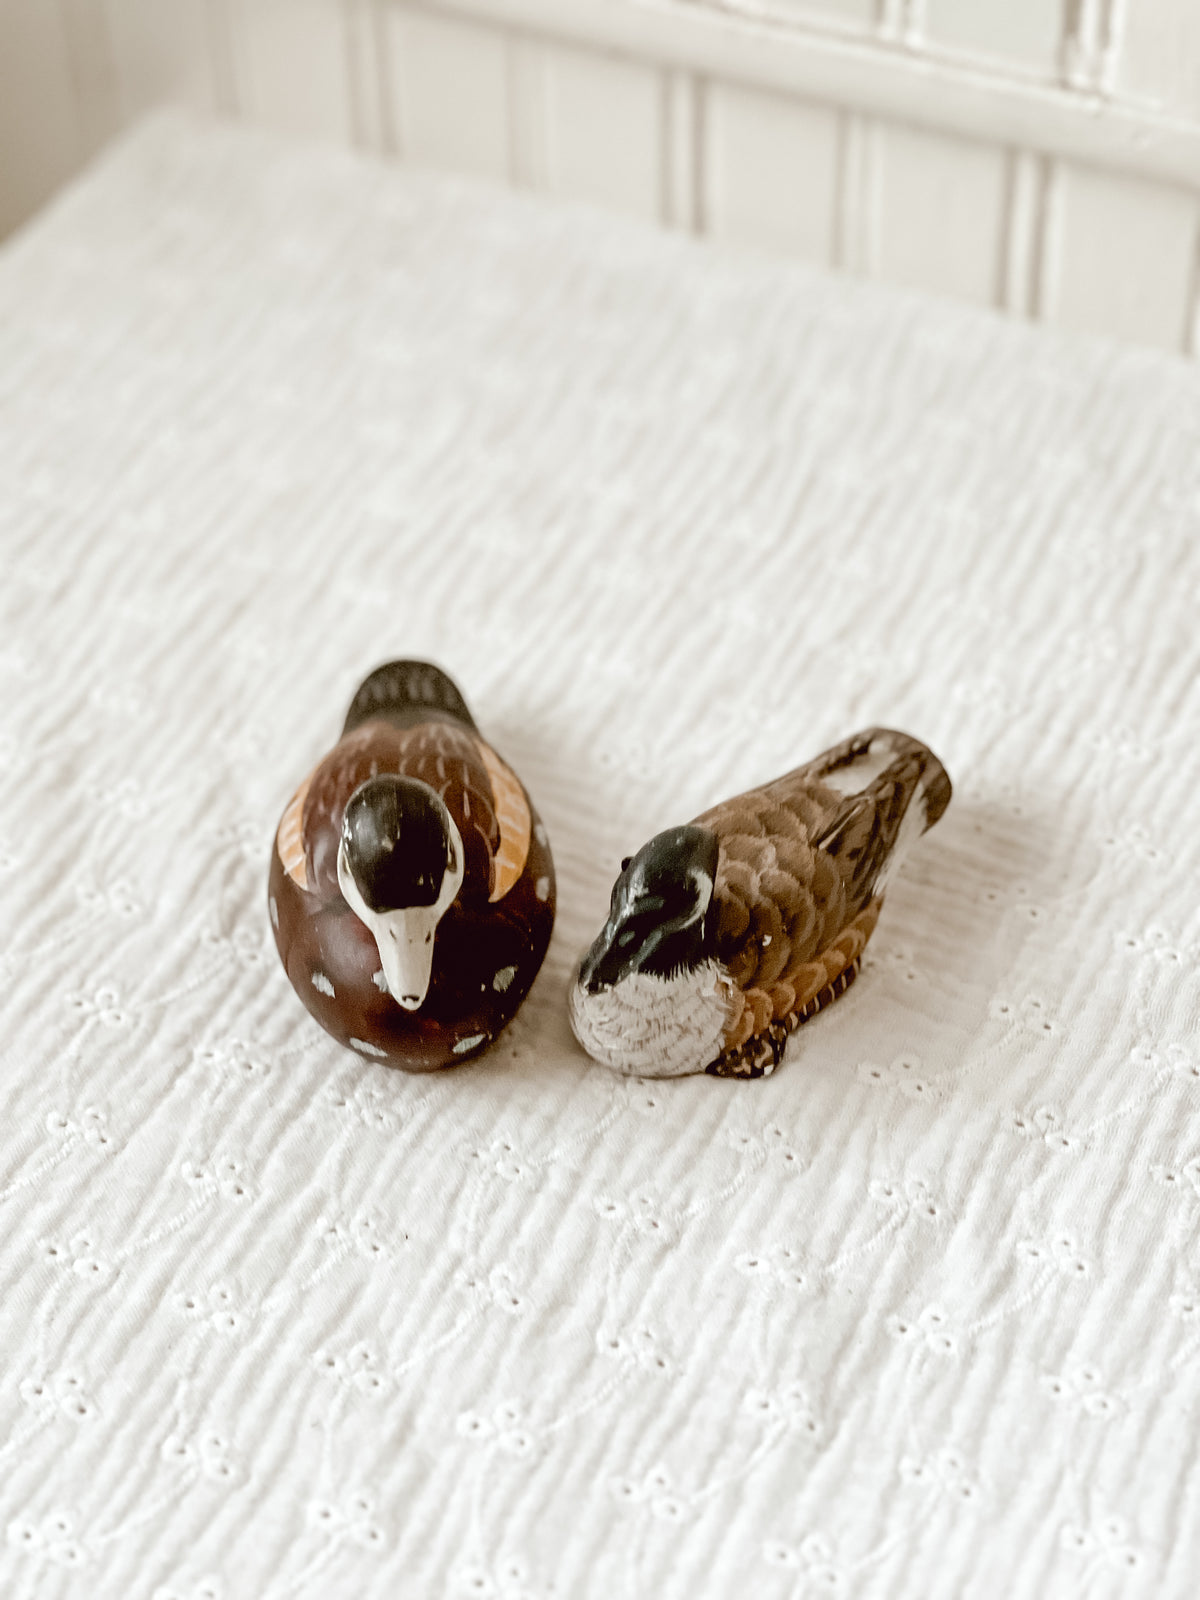 Vintage duck figurines